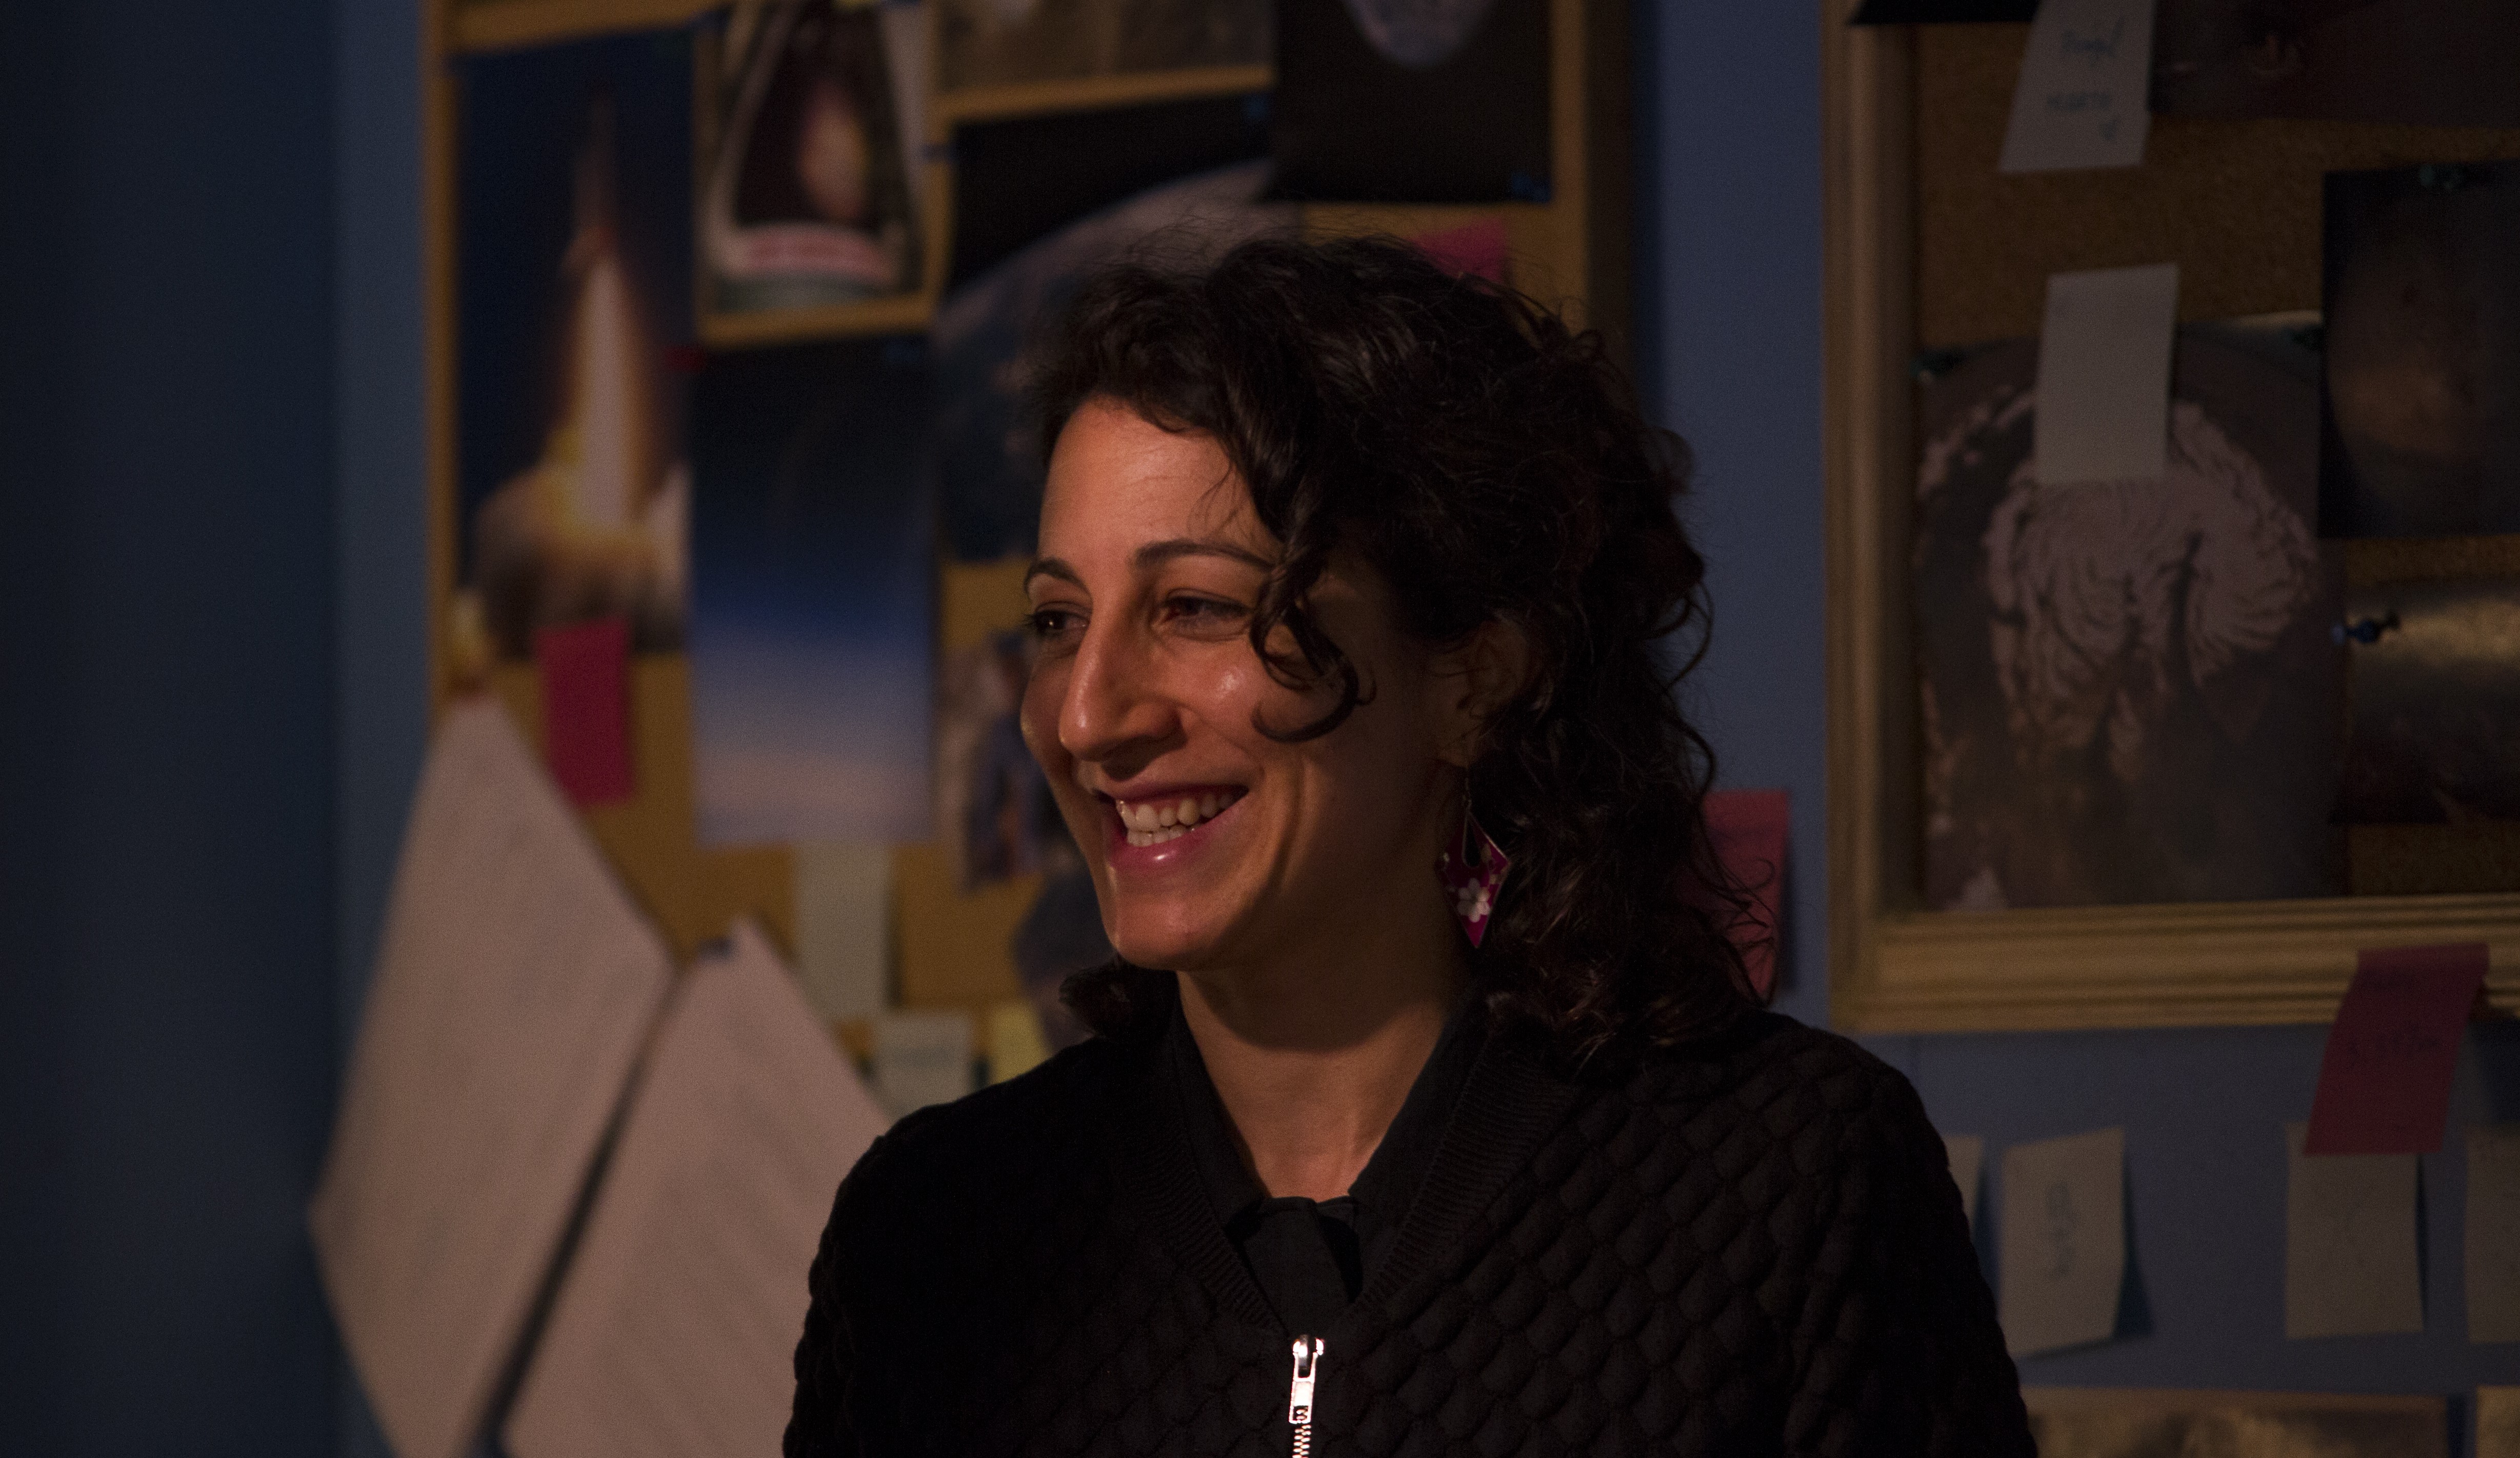 Directora del cortometraje "Recuerda": Laila Hotait